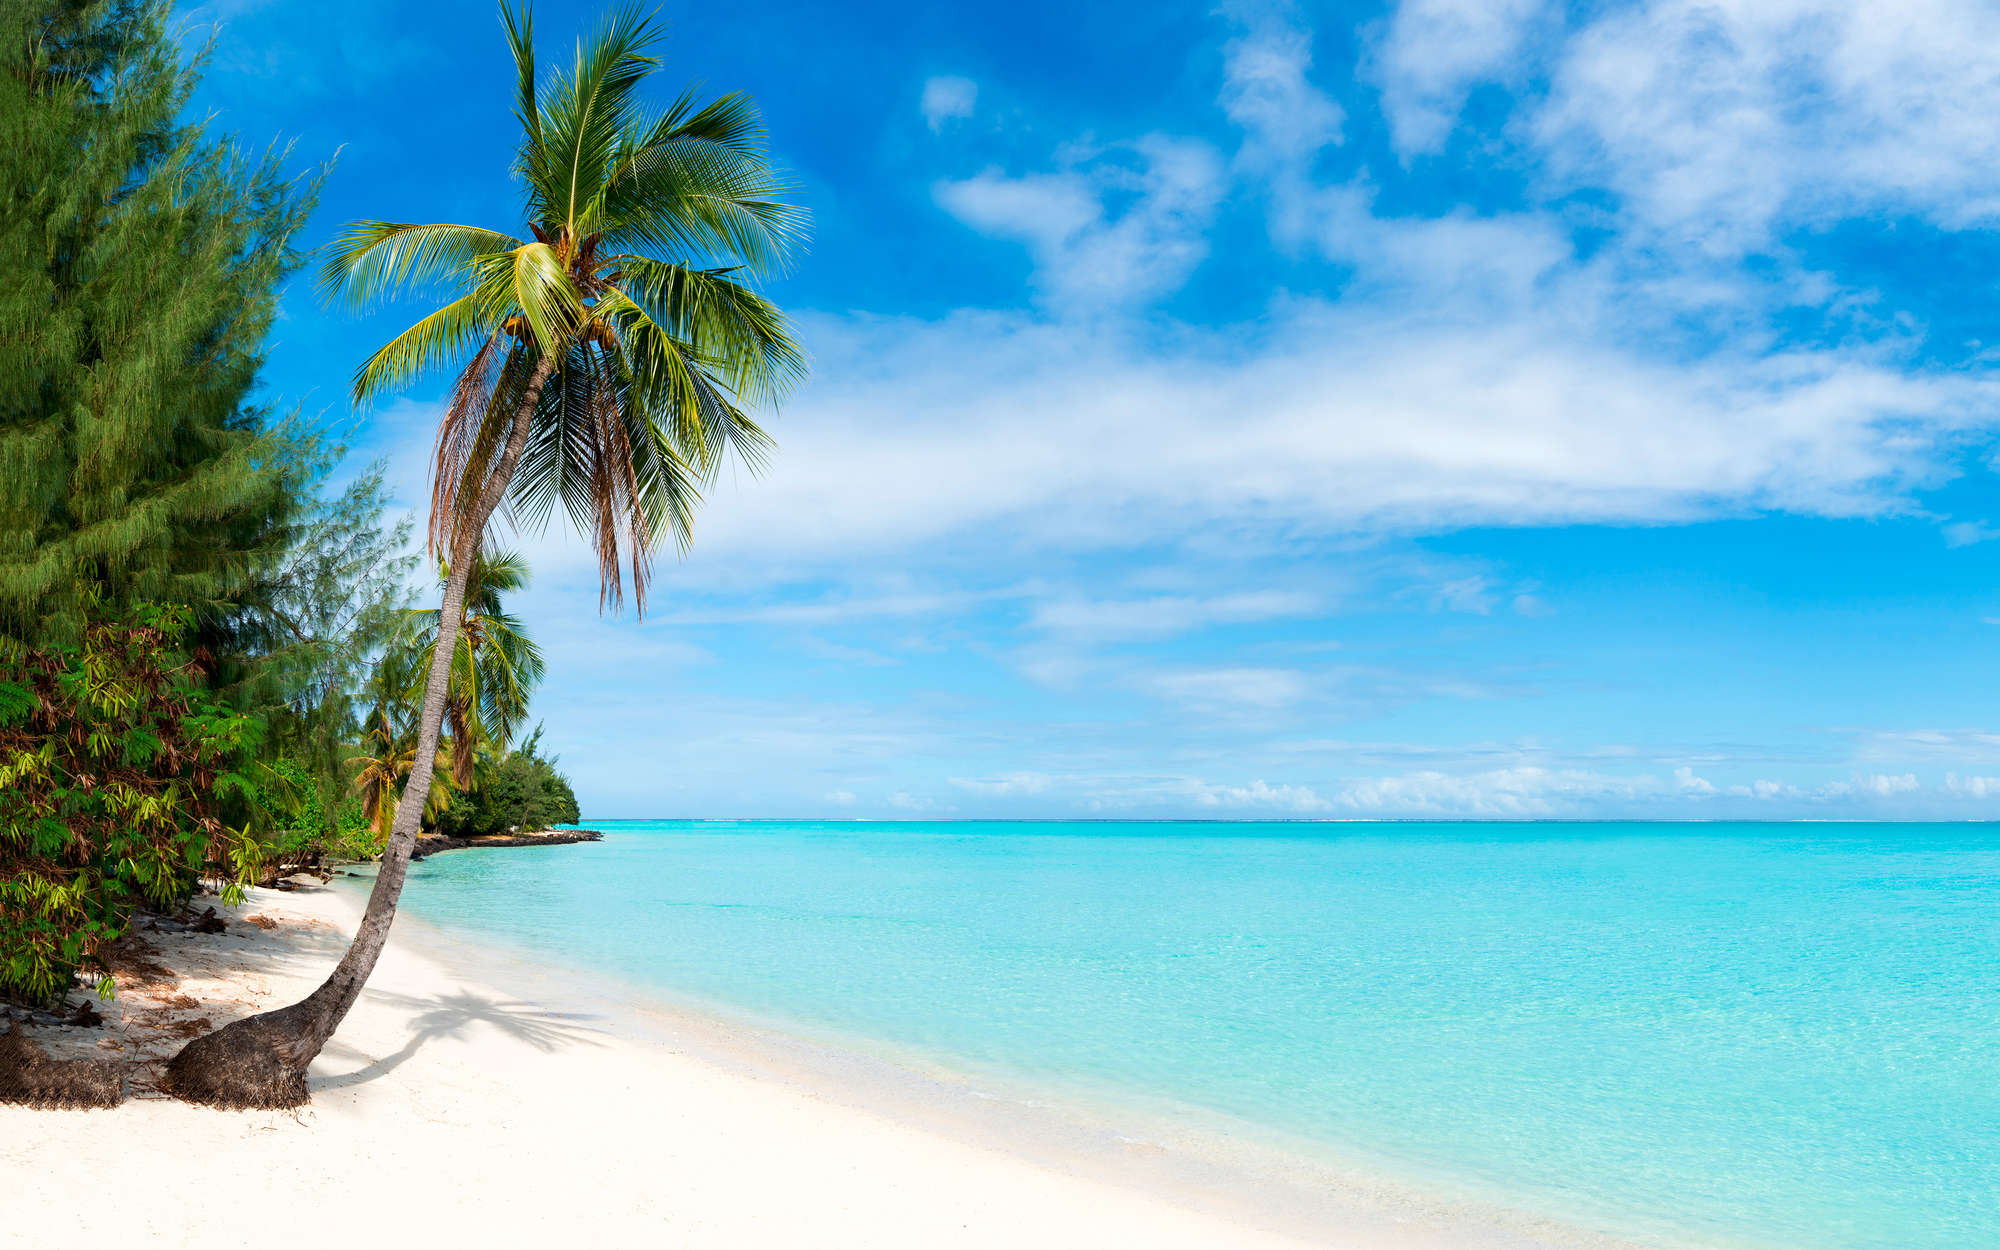             Fotomuralis spiaggia sabbiosa con palma - vello liscio perlescente
        